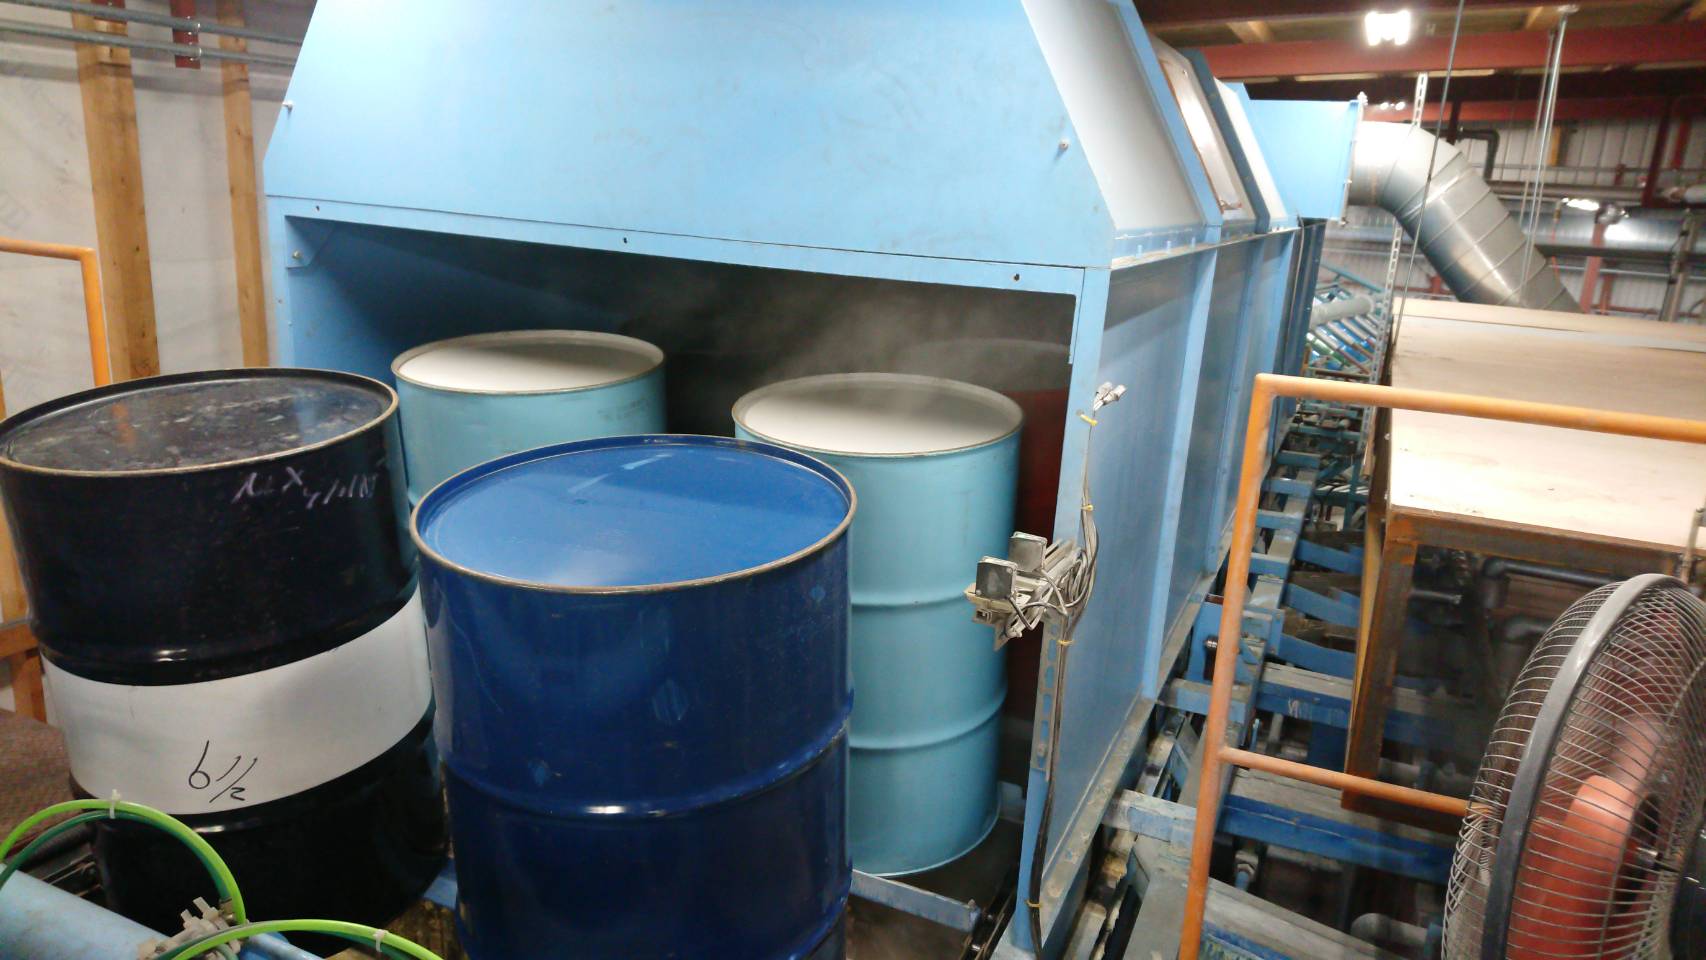 九州容器 小倉南工場 自動洗浄機